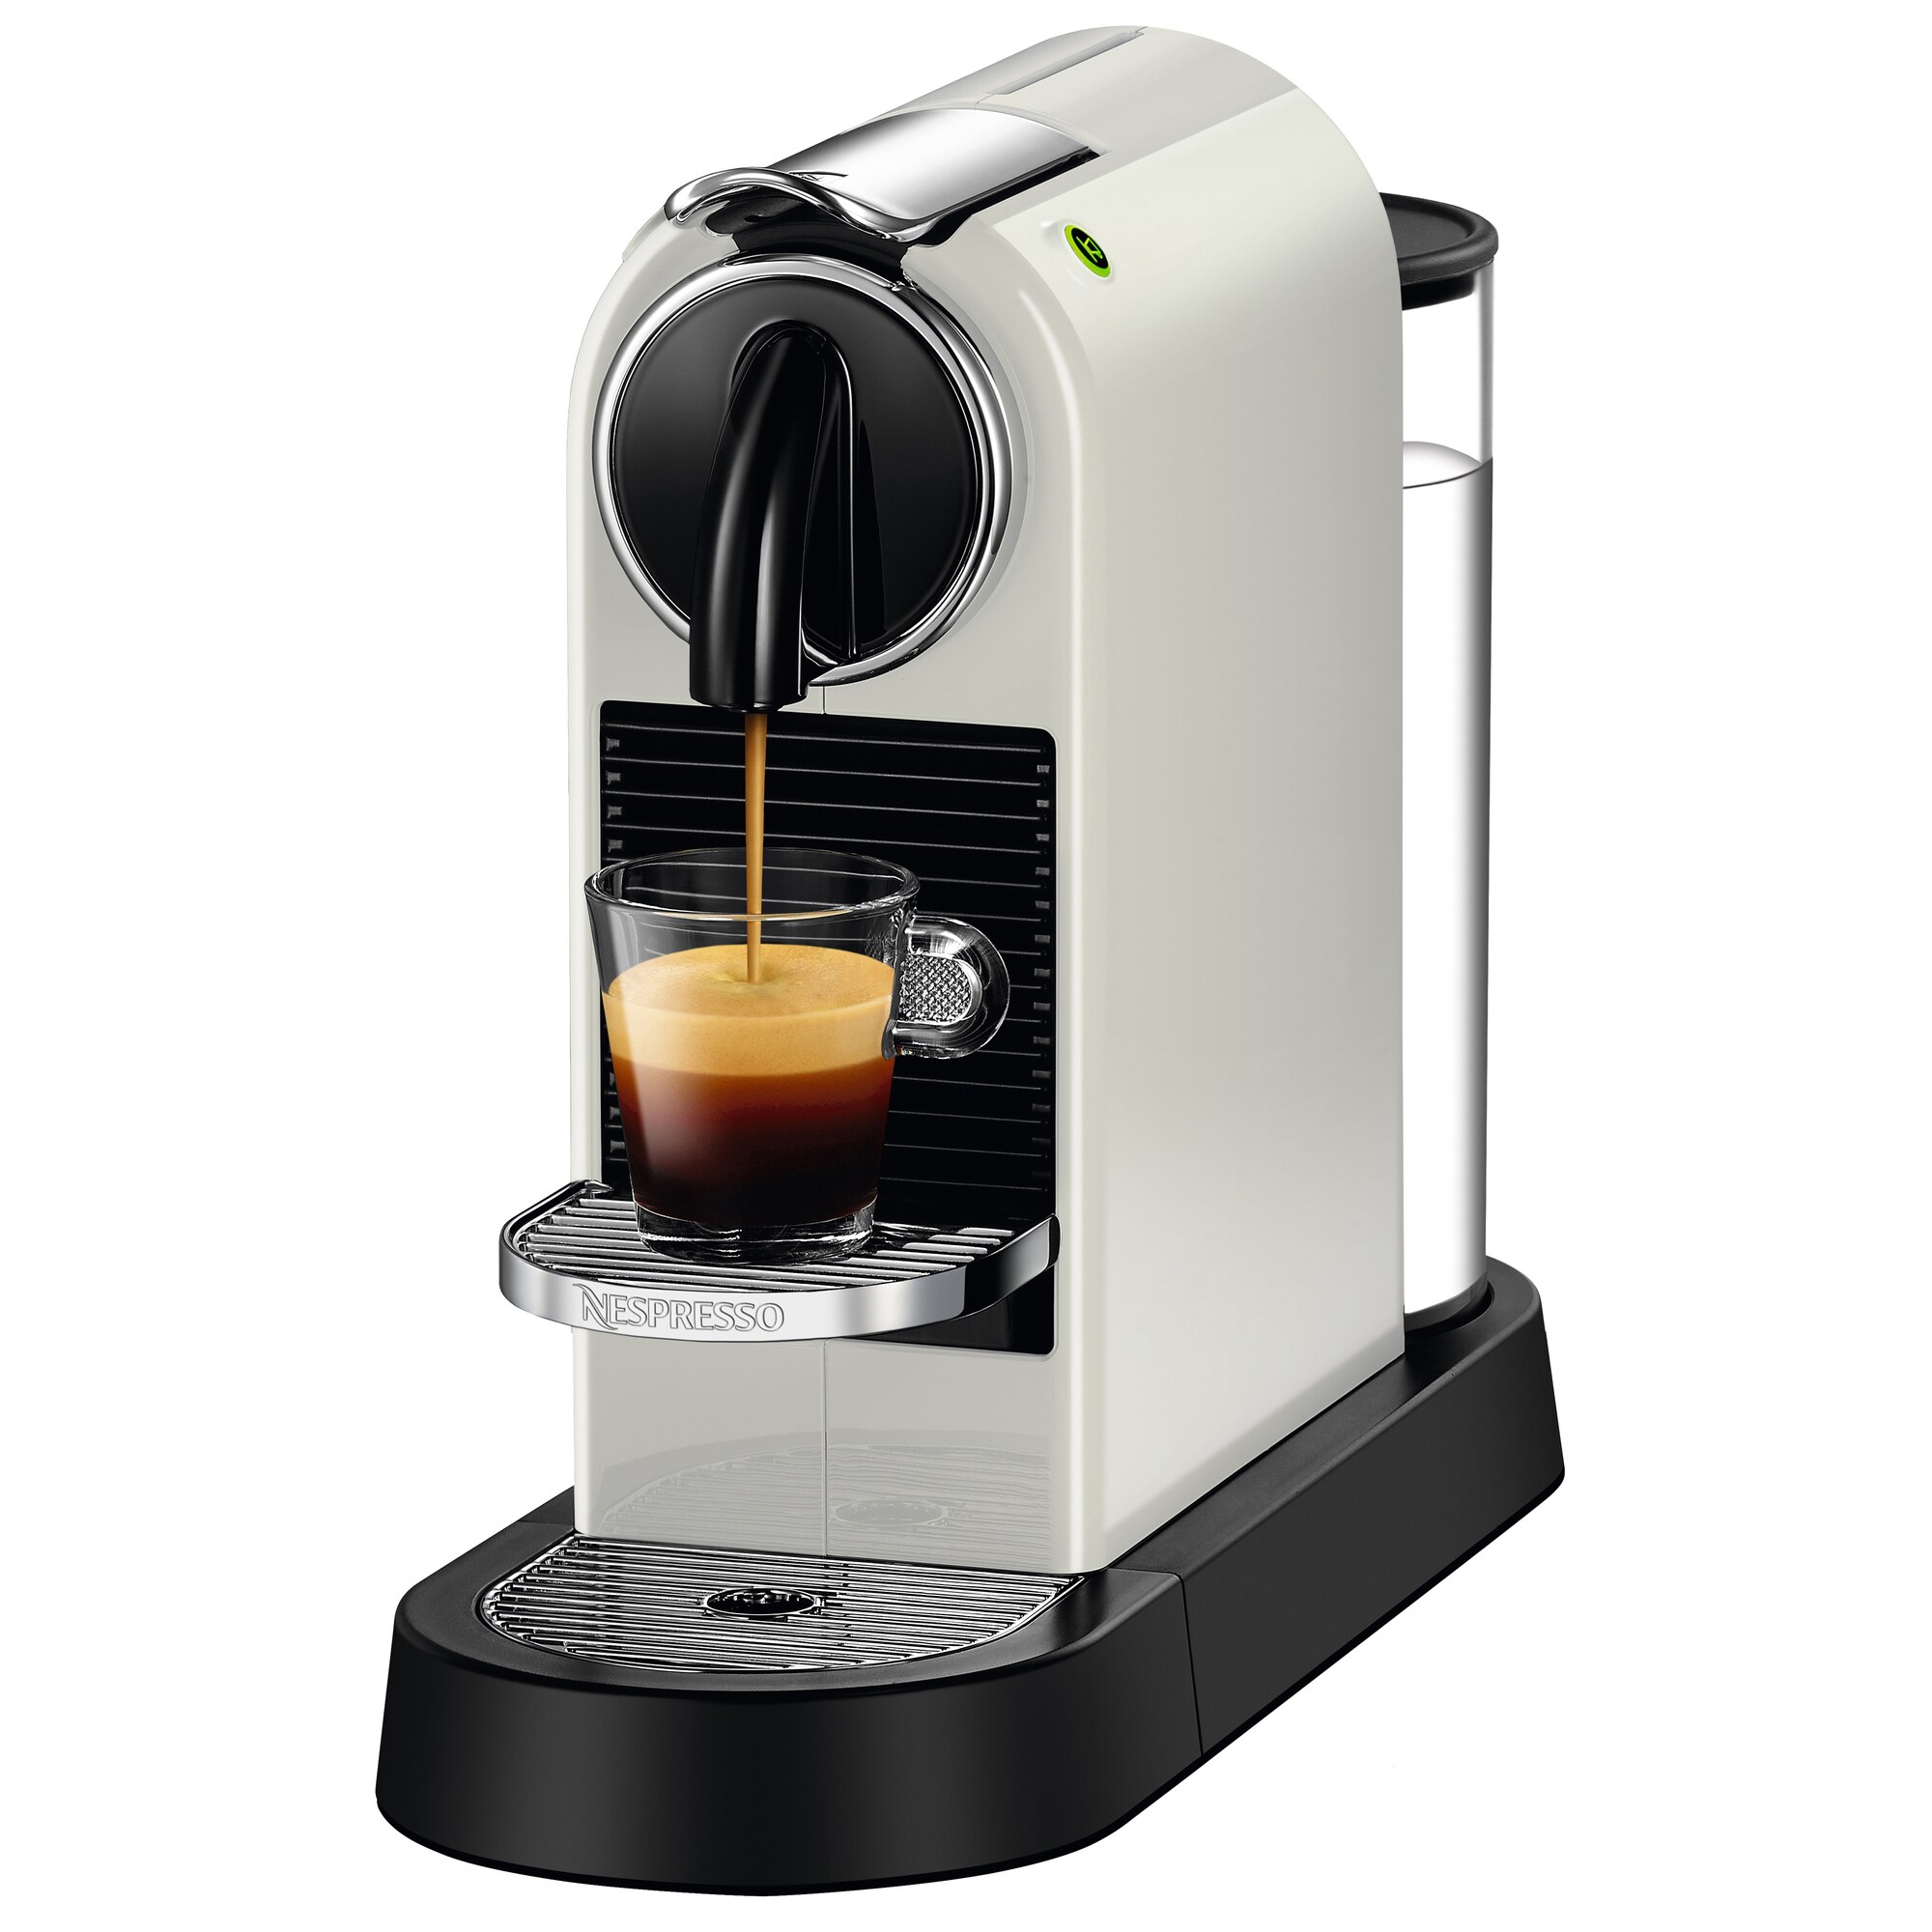 Vårt utvalg av Nespresso kaffemaskiner - Elkjøp